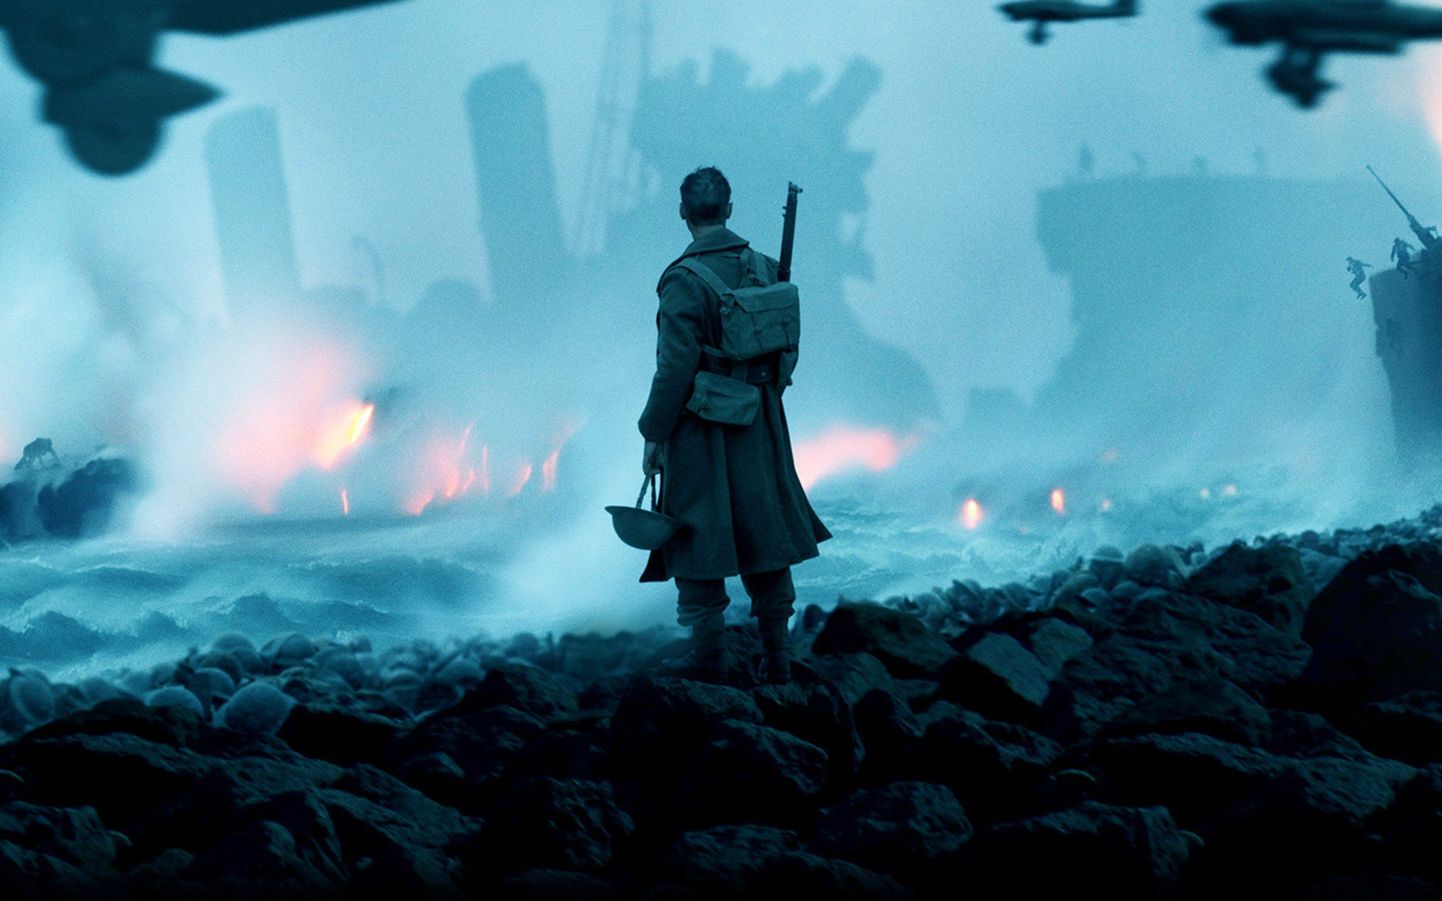 Lõksus. Ees on surm, vees on surm. "Dunkirk" on lugu ajast, mil kogu lootus näis olevat kadunud.